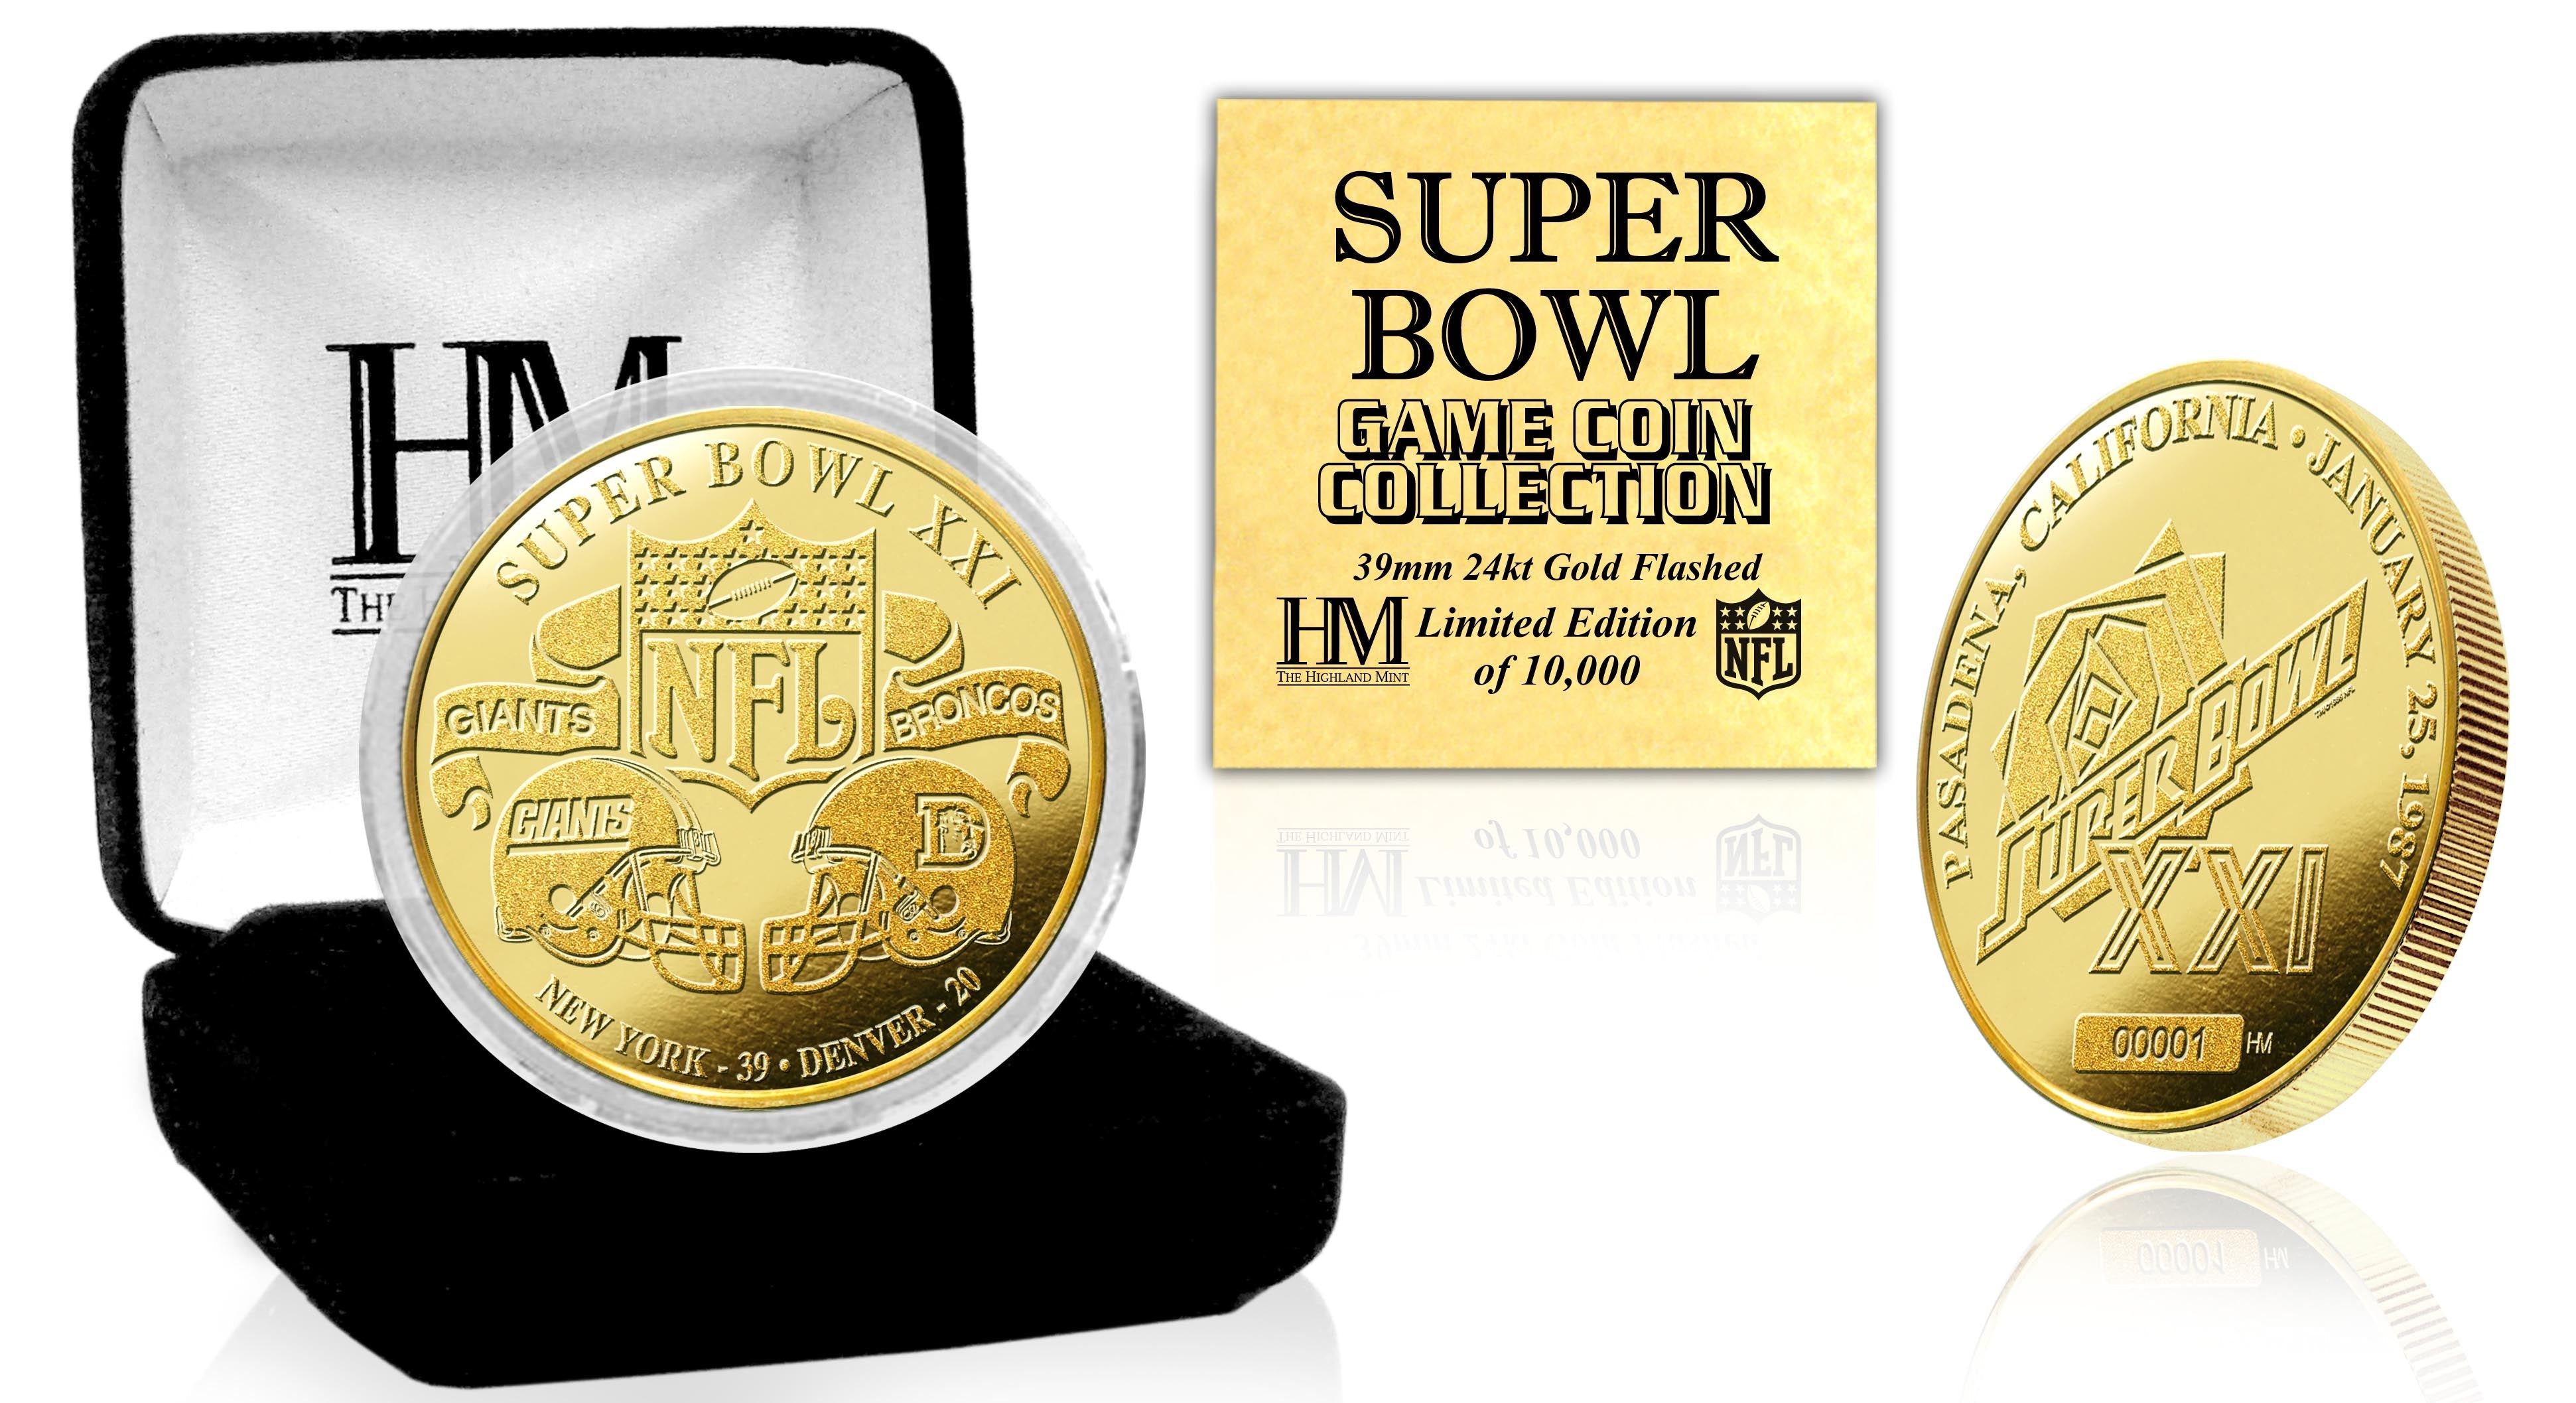 Super Bowl XXI 24kt Gold Flip Coin